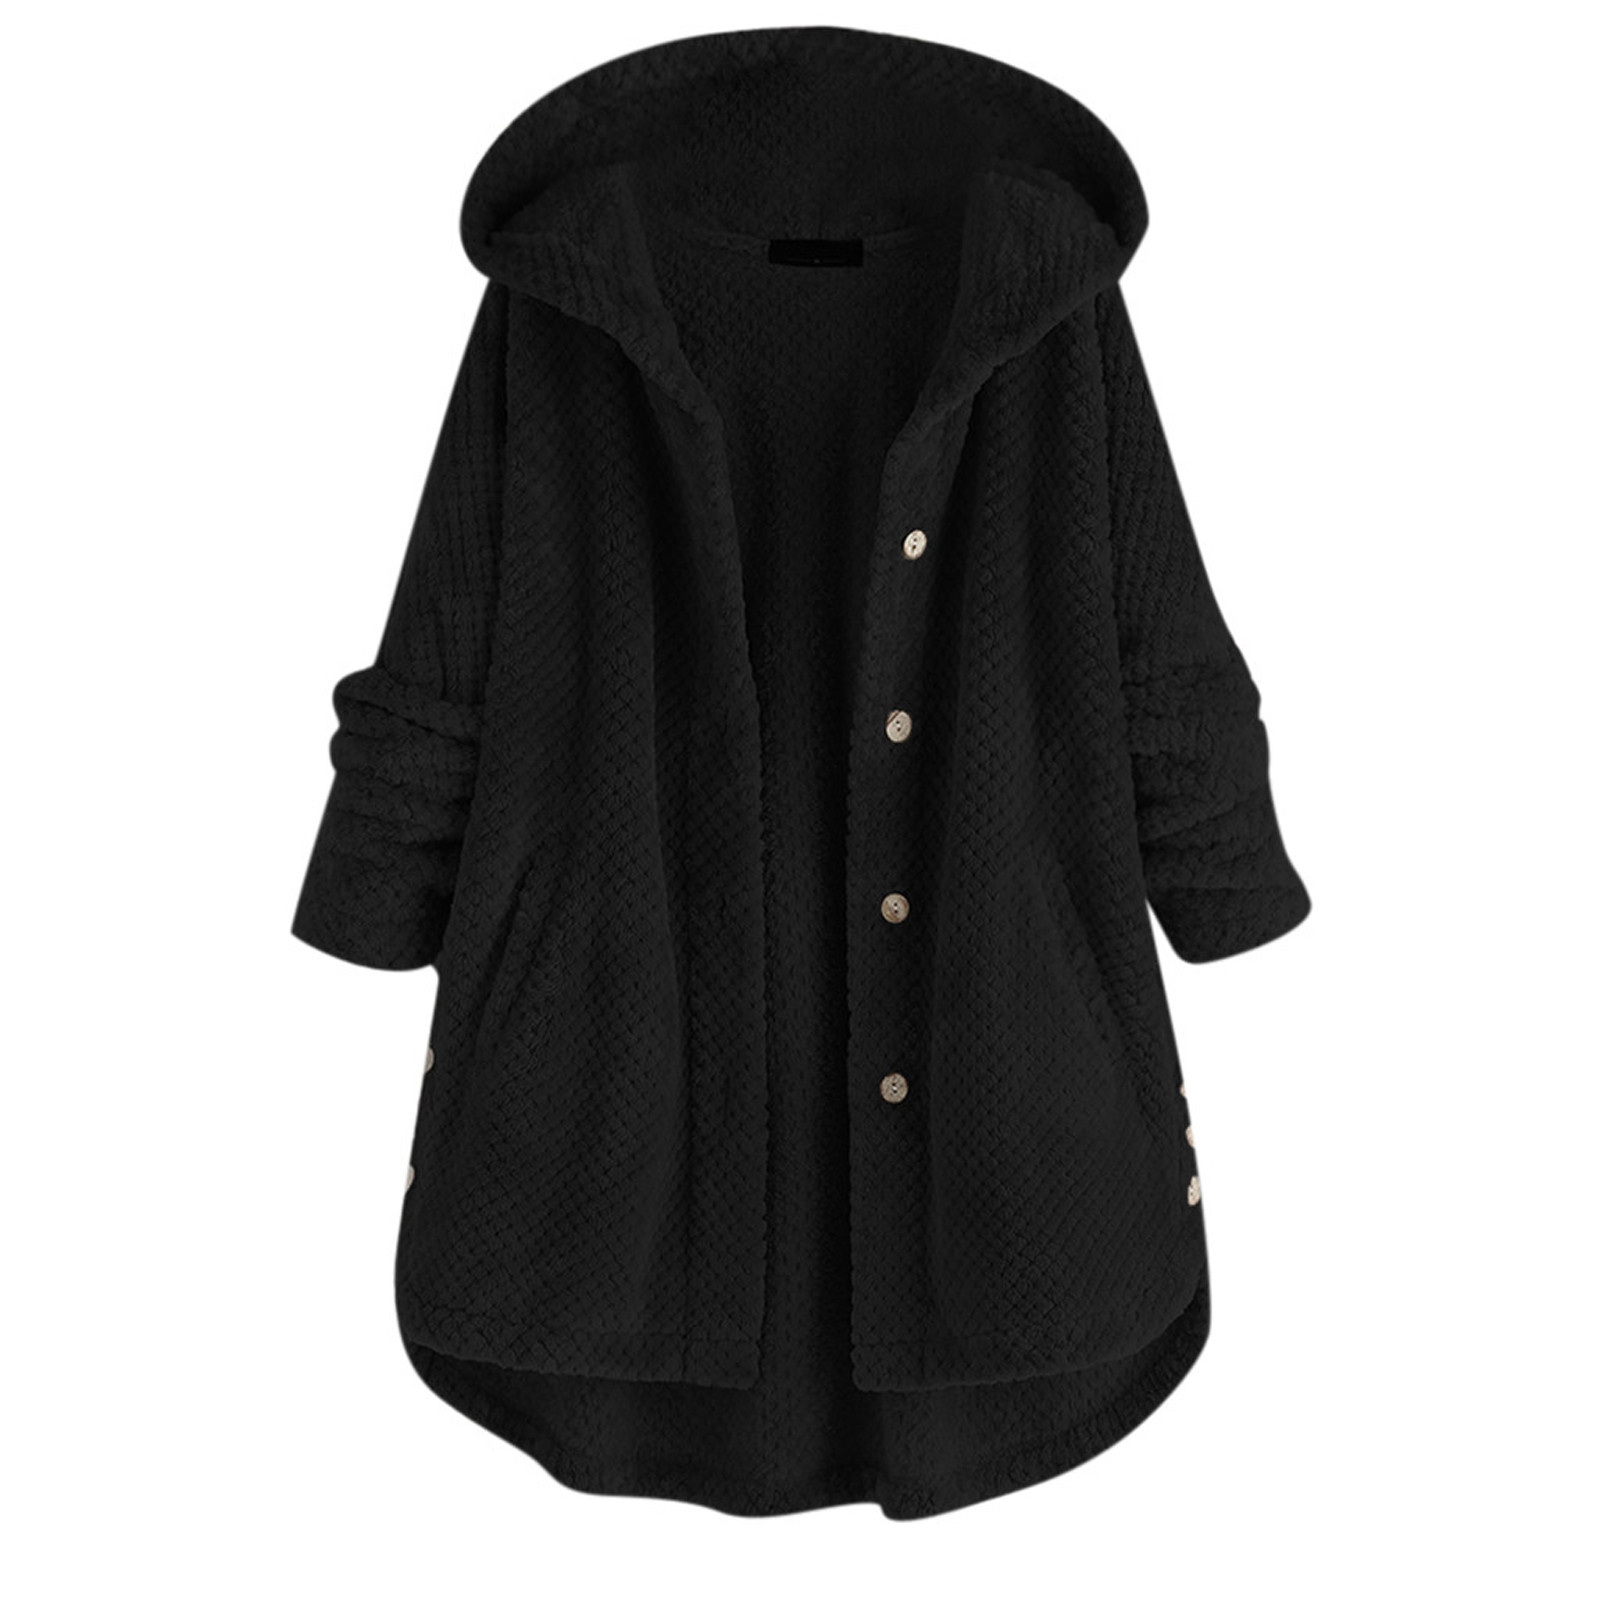 Fuzzy Jacket Women Zip Up Winter Coats Casual Long Sleeve Outwear ...